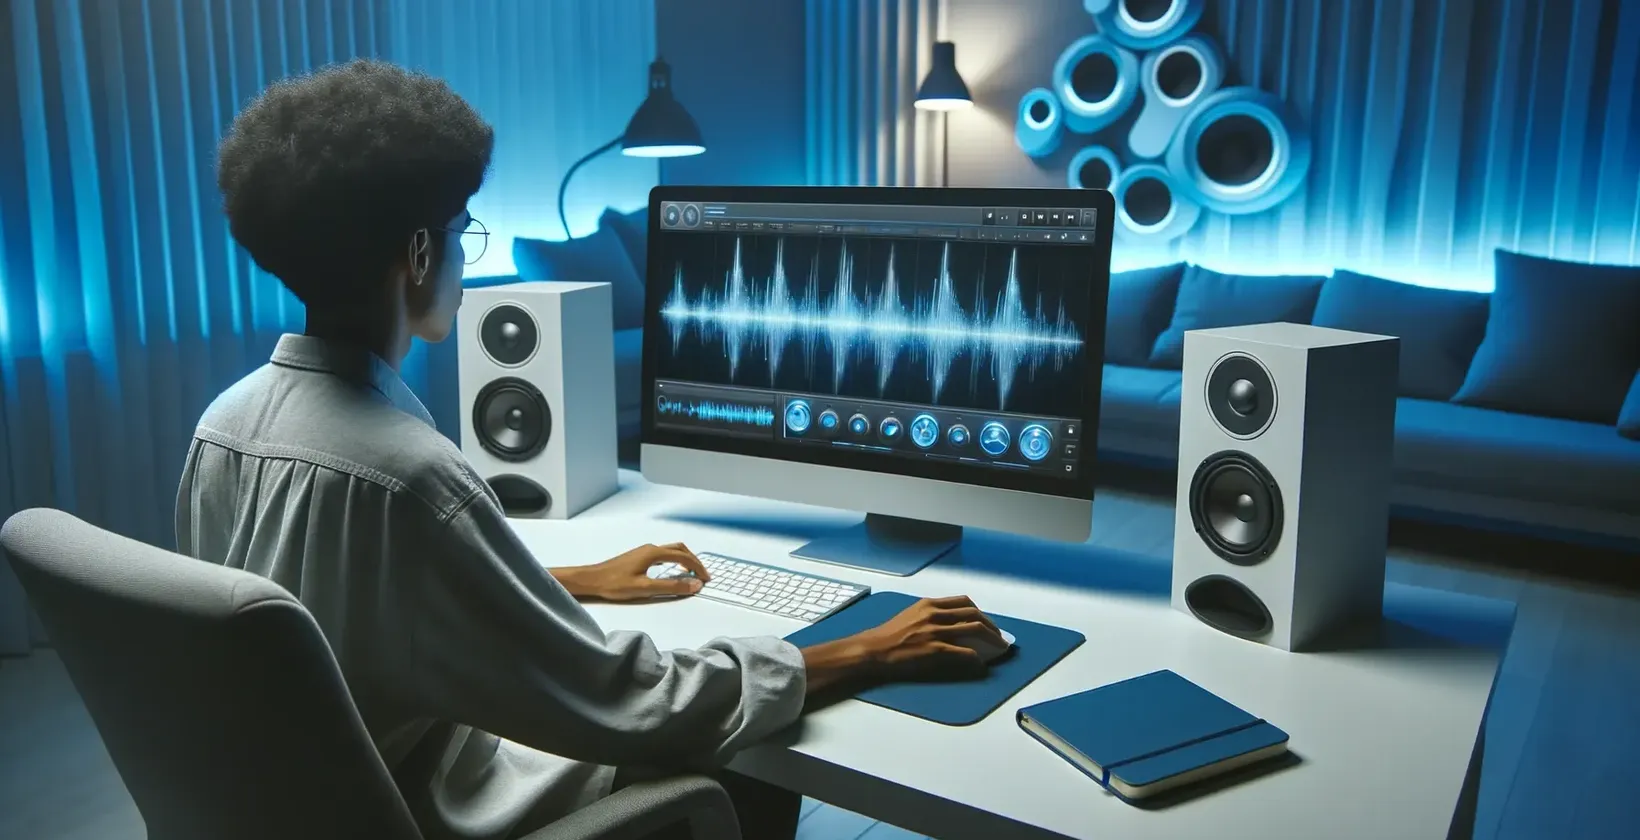 कंप्यूटर पर काम करने वाला व्यक्ति जो स्पीकर के साथ एक आधुनिक स्टूडियो वातावरण में शॉटकट वीडियो में पाठ जोड़ता है